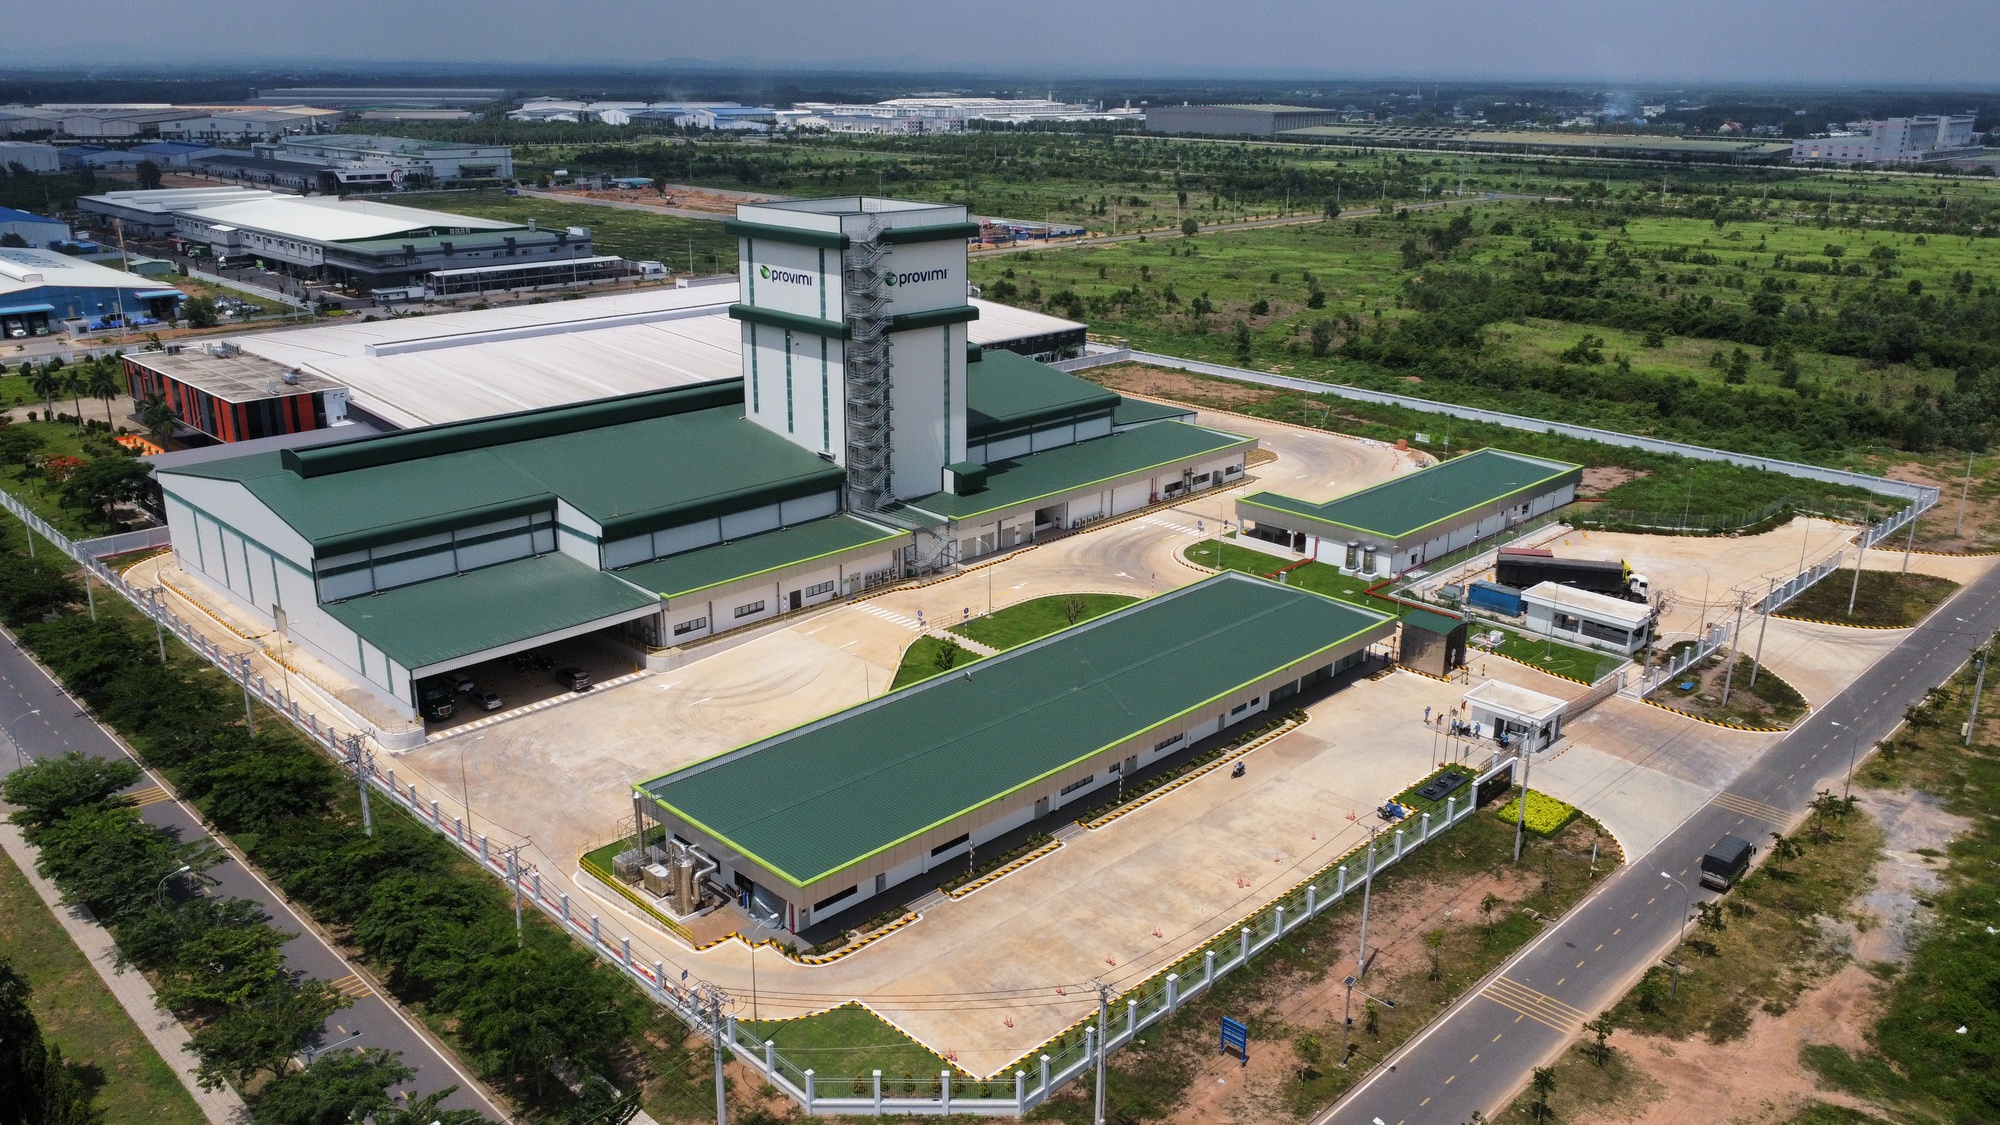 Tập đoàn Mỹ xây nhà máy thức ăn chăn nuôi hiện đại nhất châu Á tại Đồng Nai - Ảnh 2.